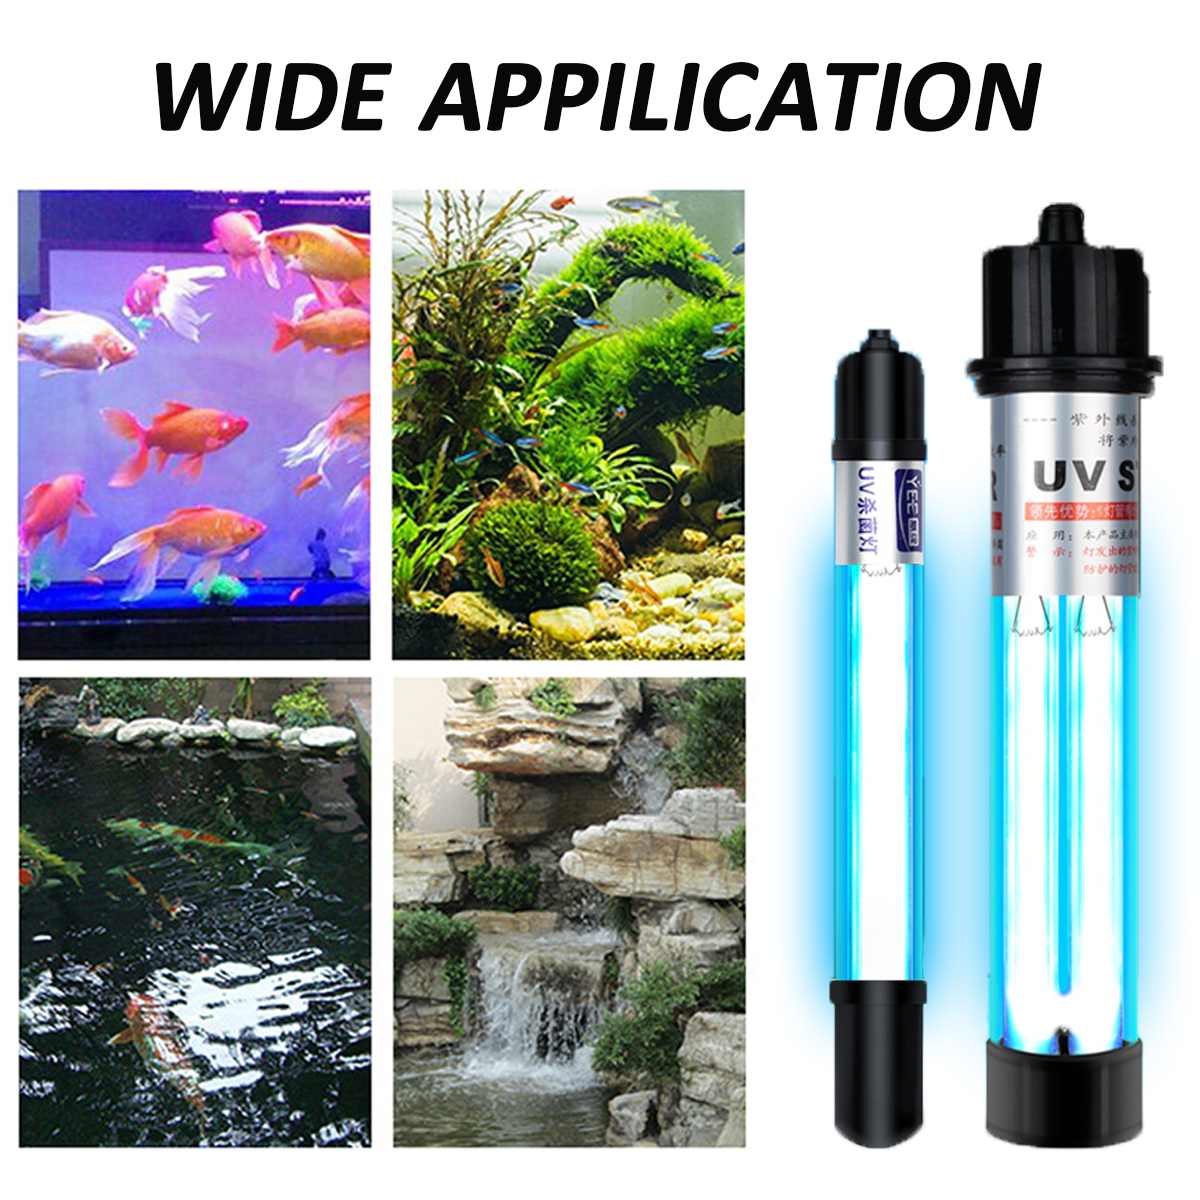 Đèn UV 30W Sterilization King Bóng Kép cao cấp, diệt tảo, diệt khuẩn cho bể cá, hồ cá, hồ thủy sinh siêu sạch